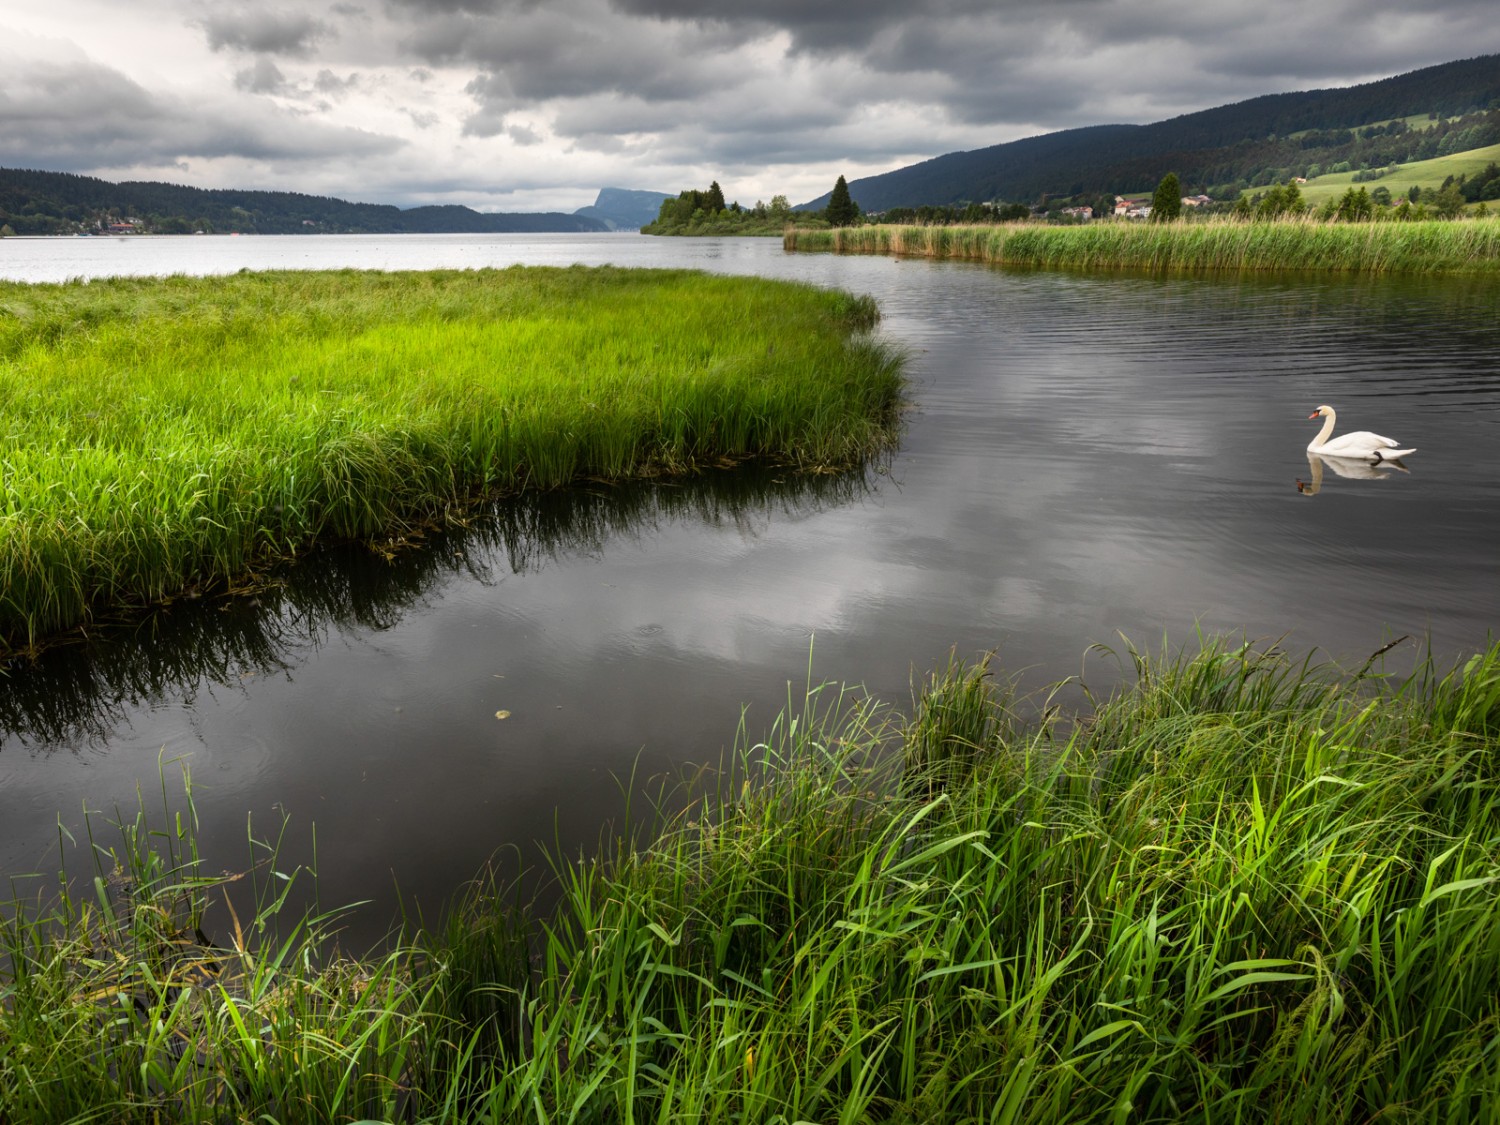 Les oiseaux aquatiques profitent également de la tranquillité du lac. Photo: Severin Nowacki